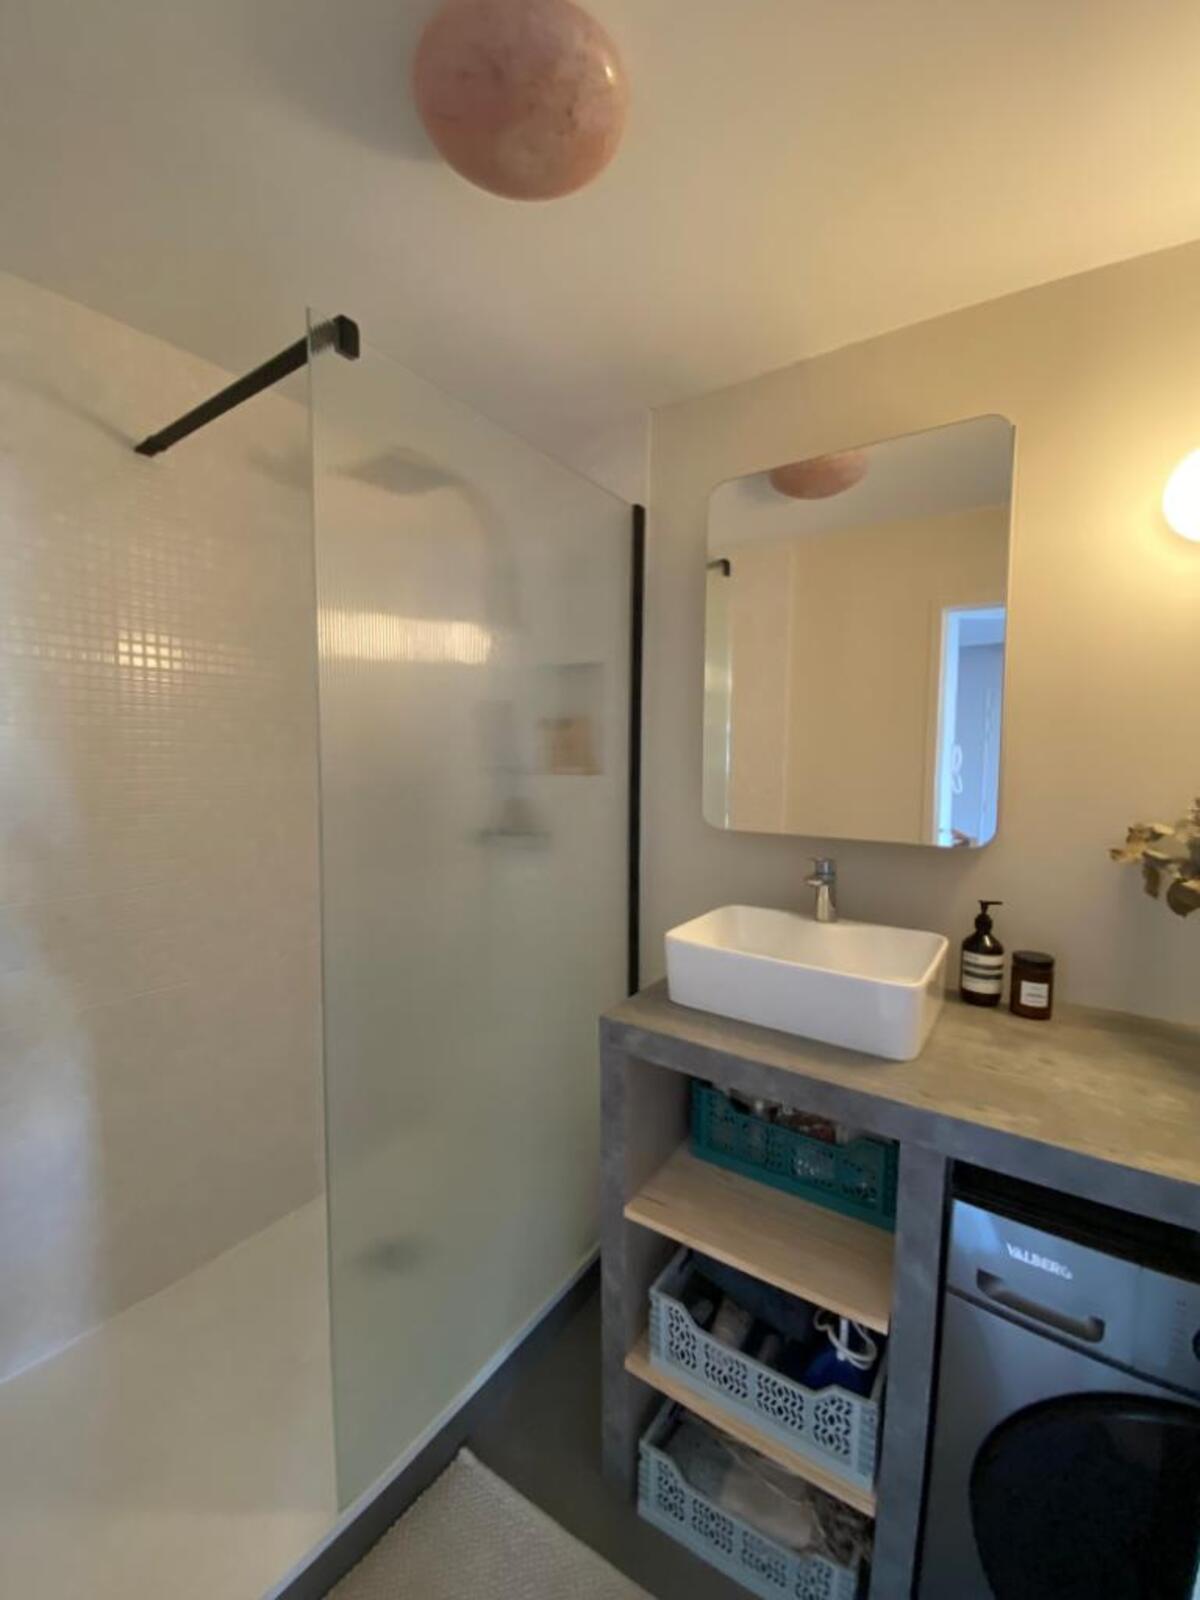 Nouvelle salle de bain - Rénovation complète d'un appartement à Biarritz (64)